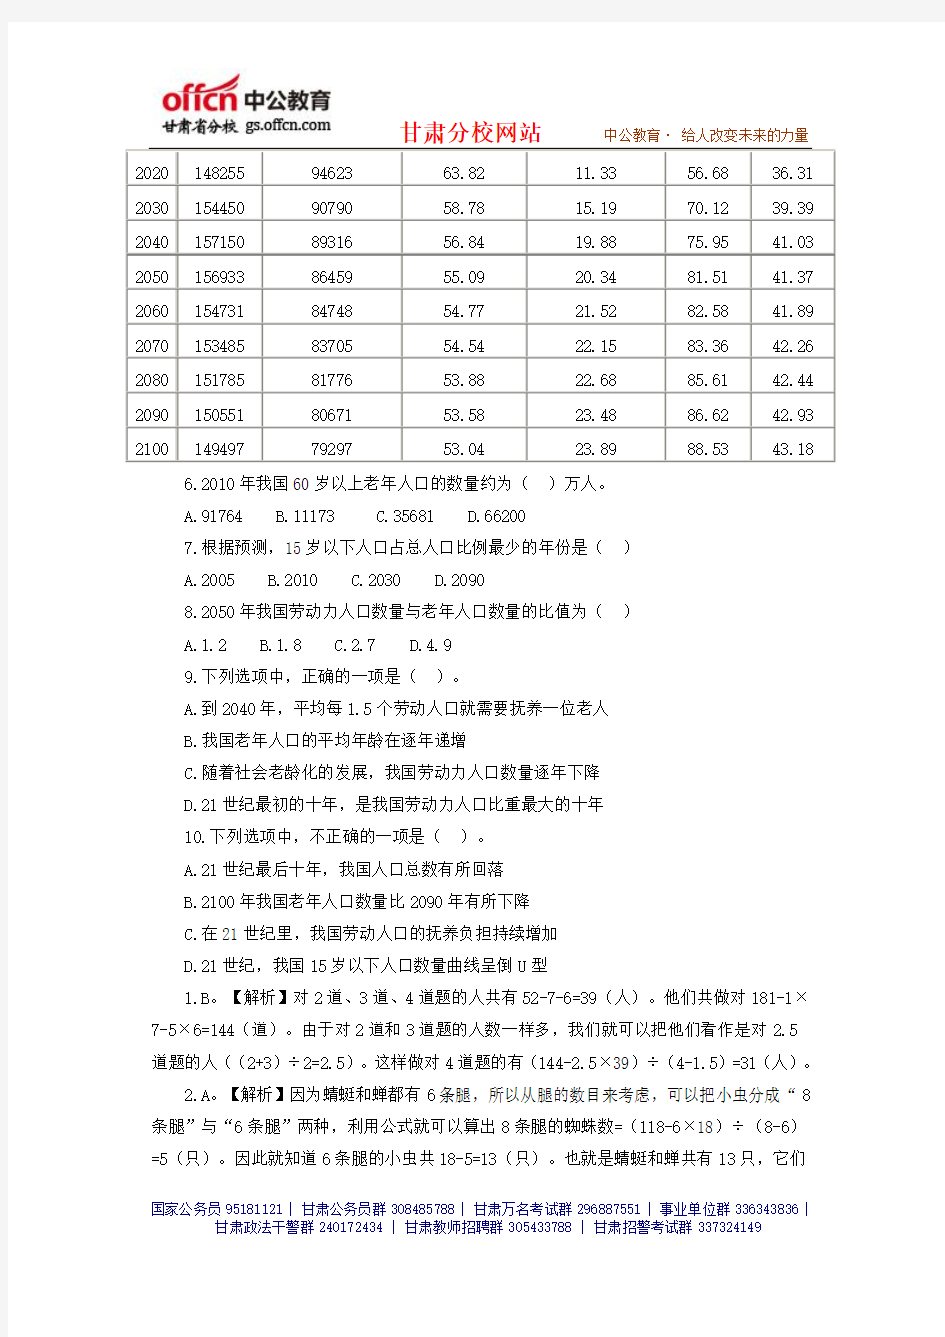 2014年甘肃省公务员考试备考资料(62)